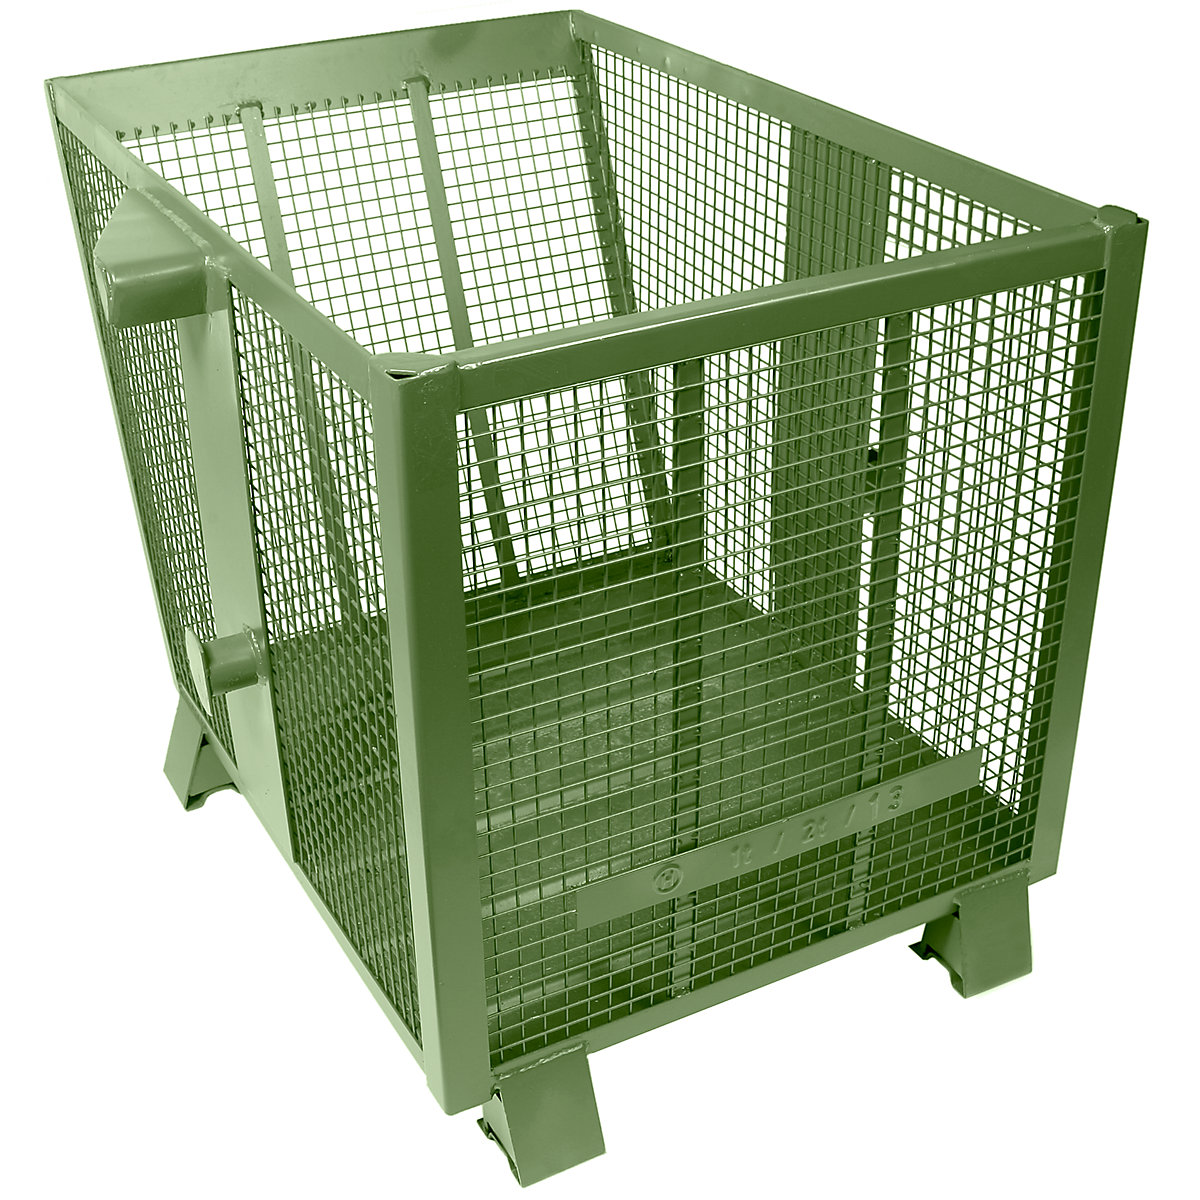 Gitterkippbehälter Heson, Volumen 0,75 m³, grün RAL 6011-6